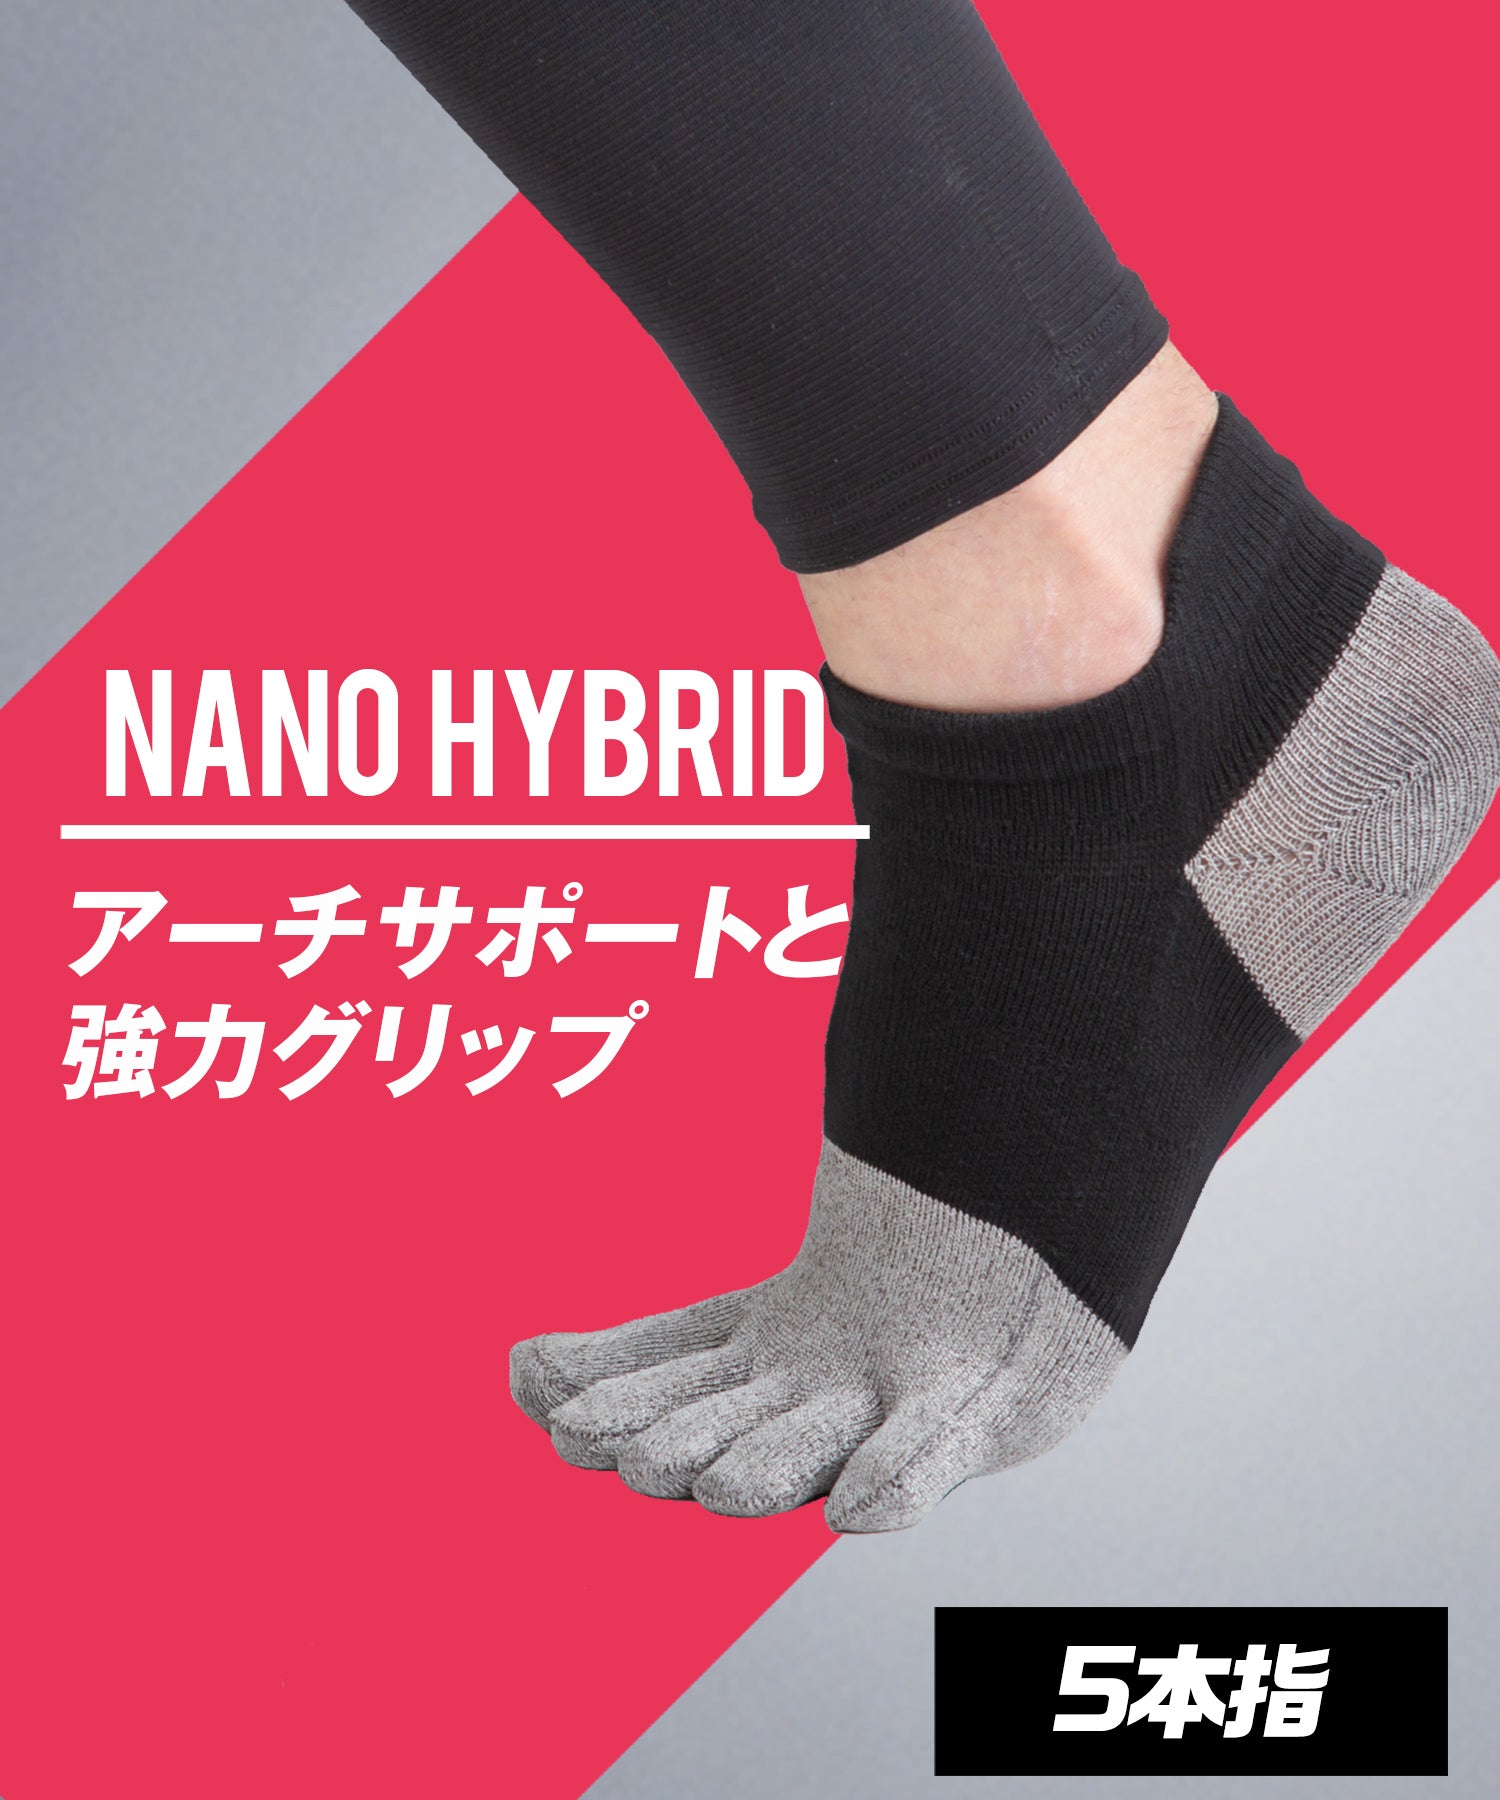 Nano Hybrid Socks Short 5 Fingers 